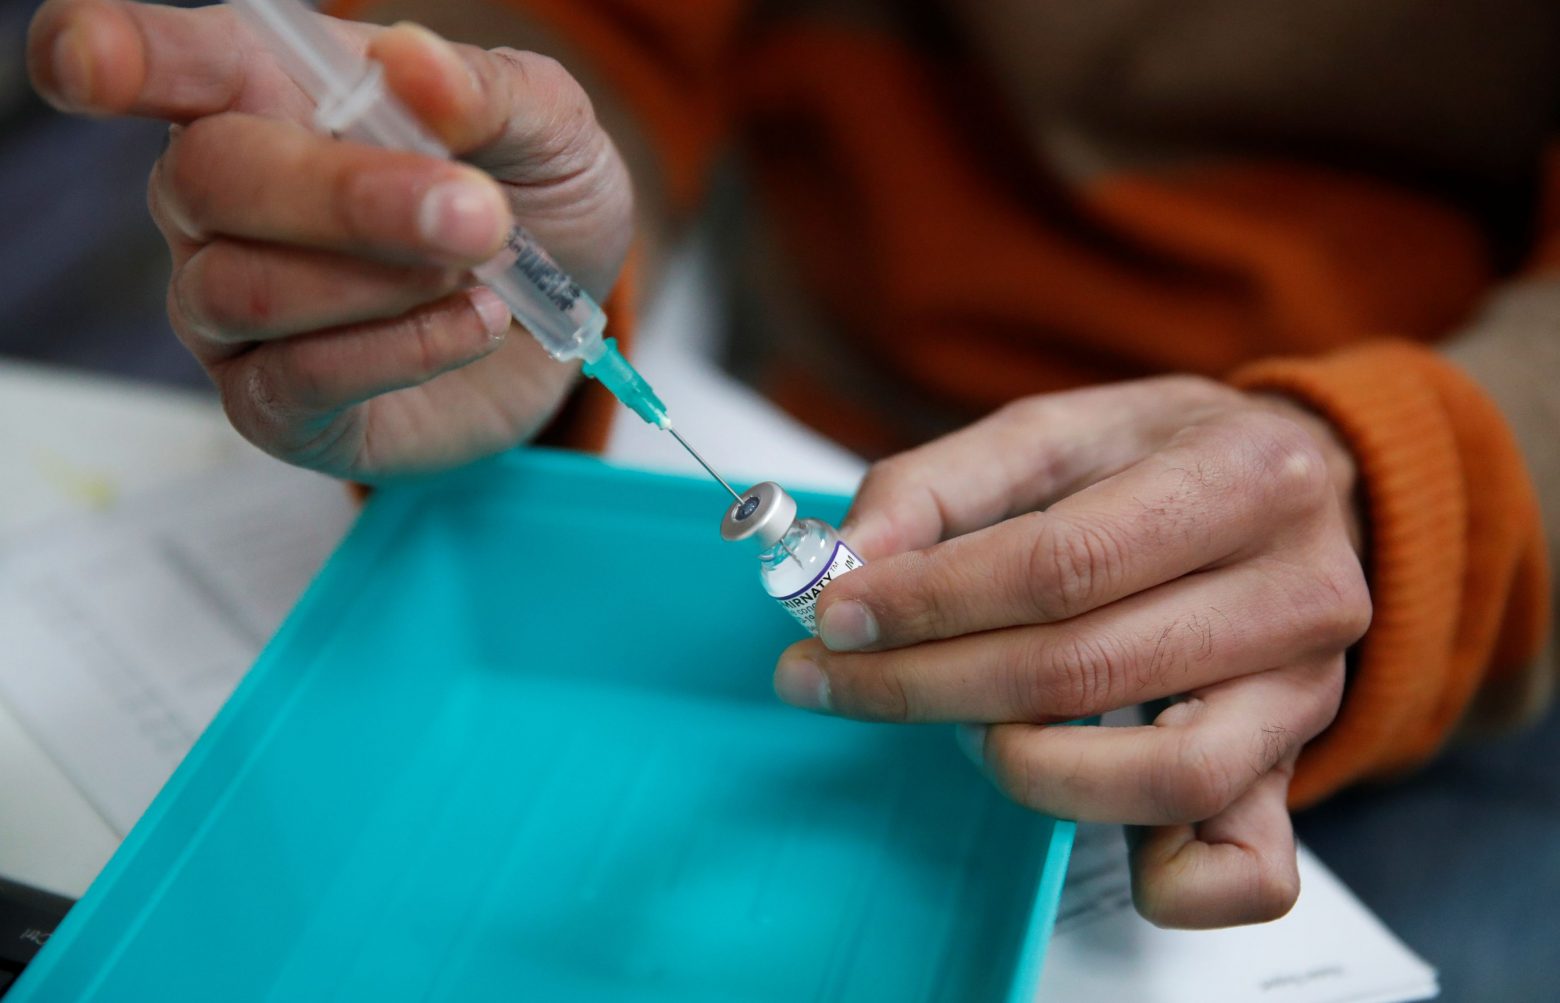 Μητσοτάκης για εμβολιασμούς – Με σύμμαχο την επιστήμη δίνουμε τη μάχη κατά της πανδημίας και της παραπληροφόρησης